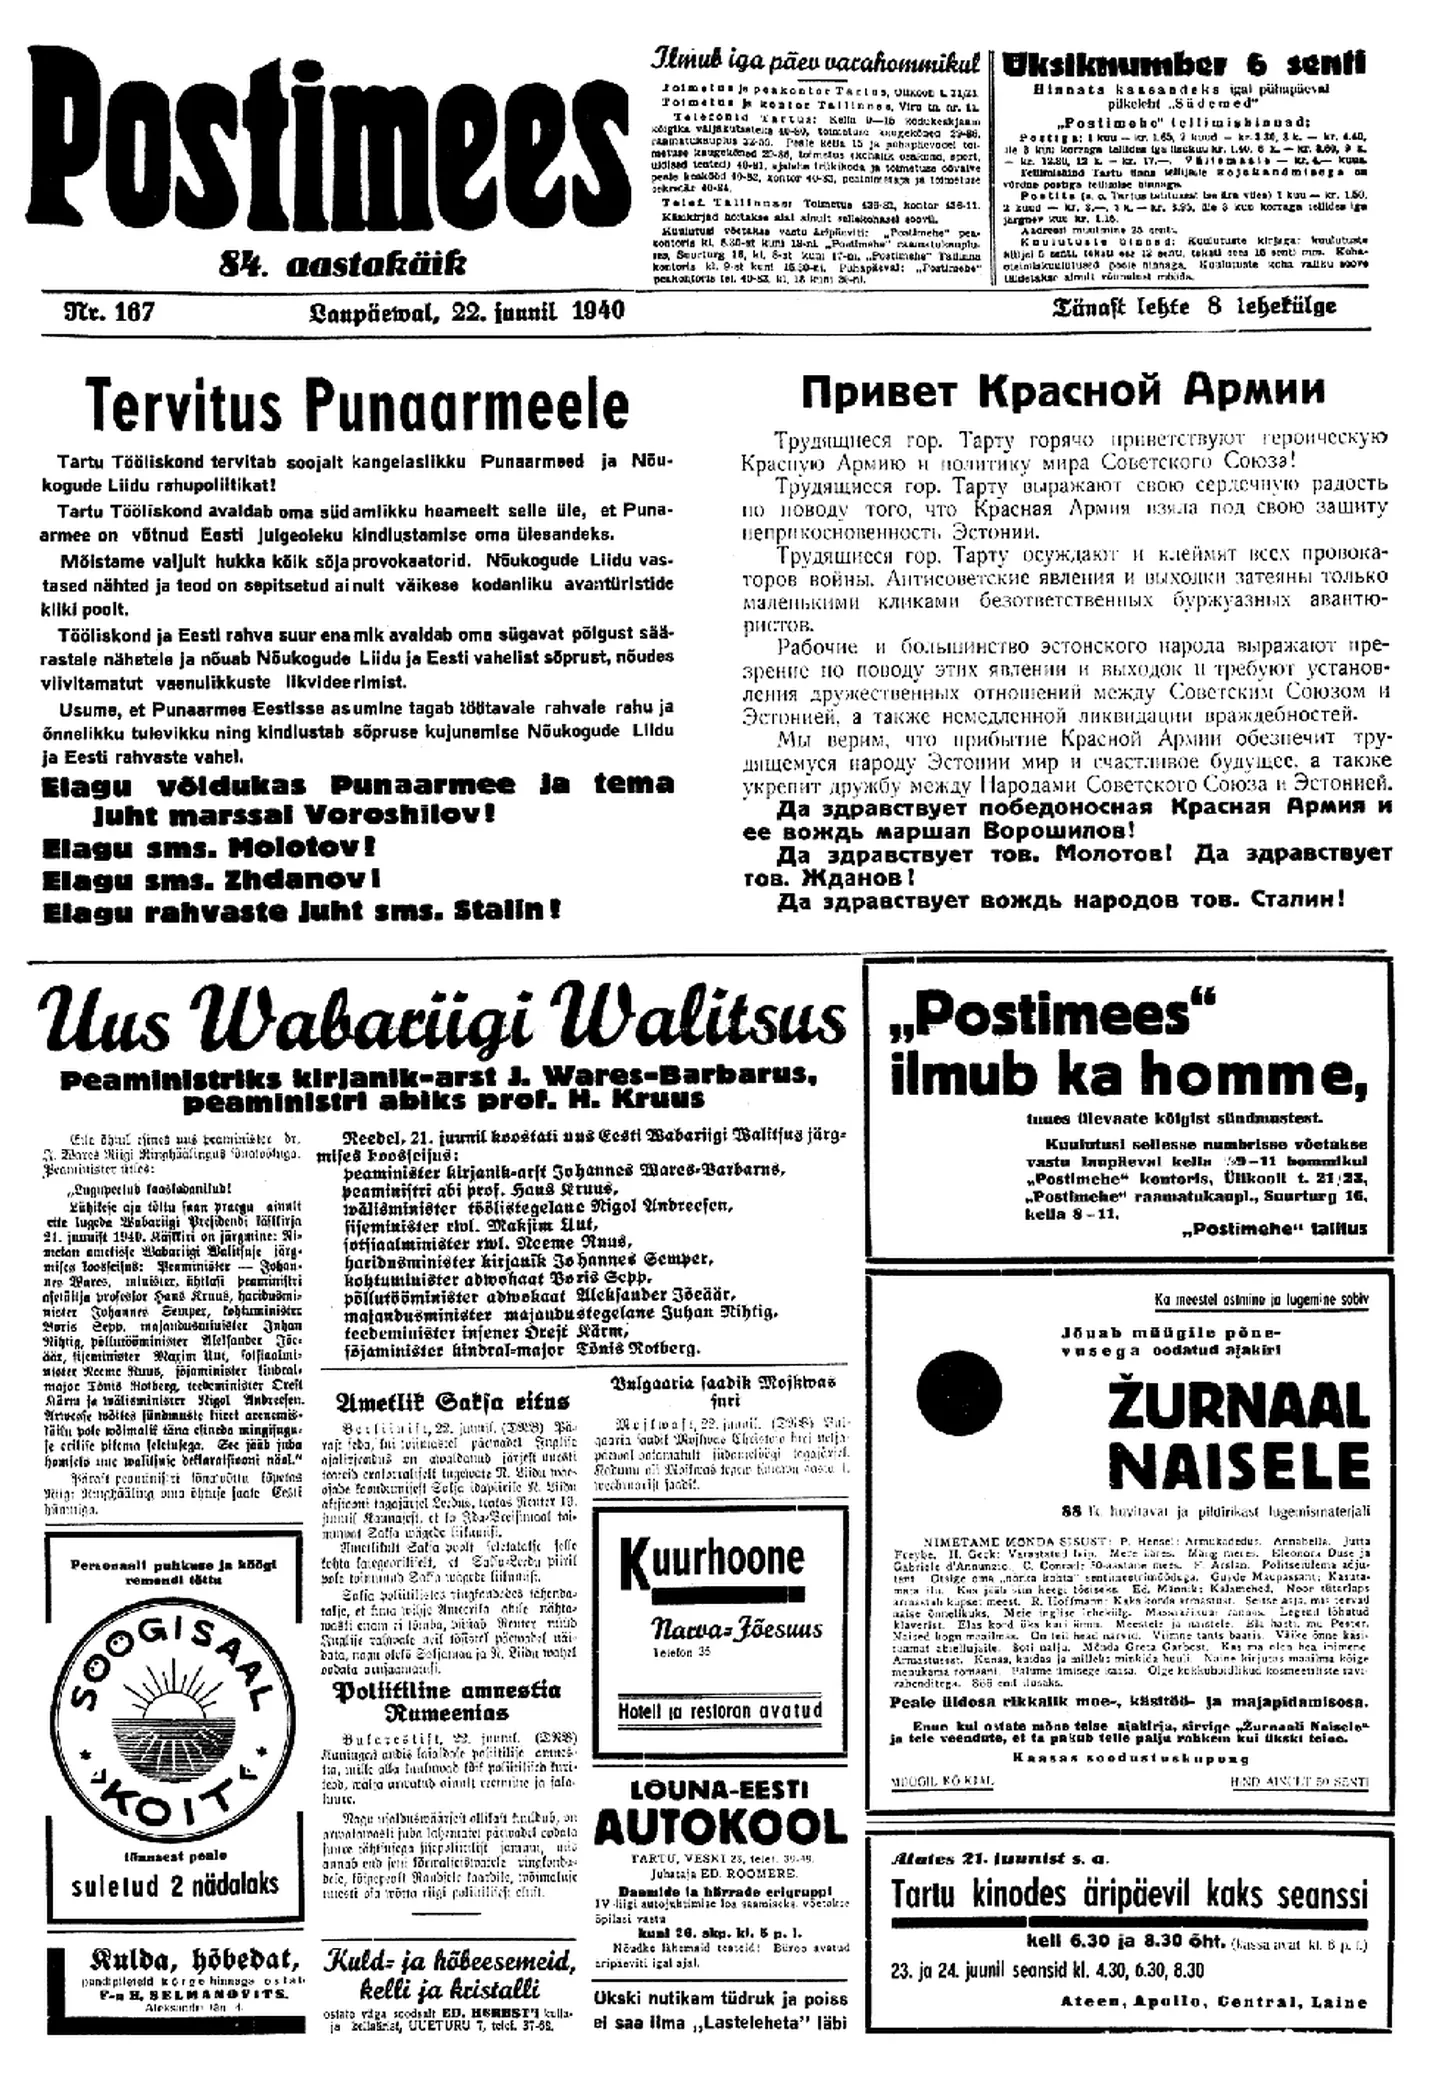 22. juunil 1940 ilmus esimene puna-Postimees, selle tegemist dirigeerisid Max Laosson ja Harald Haberman